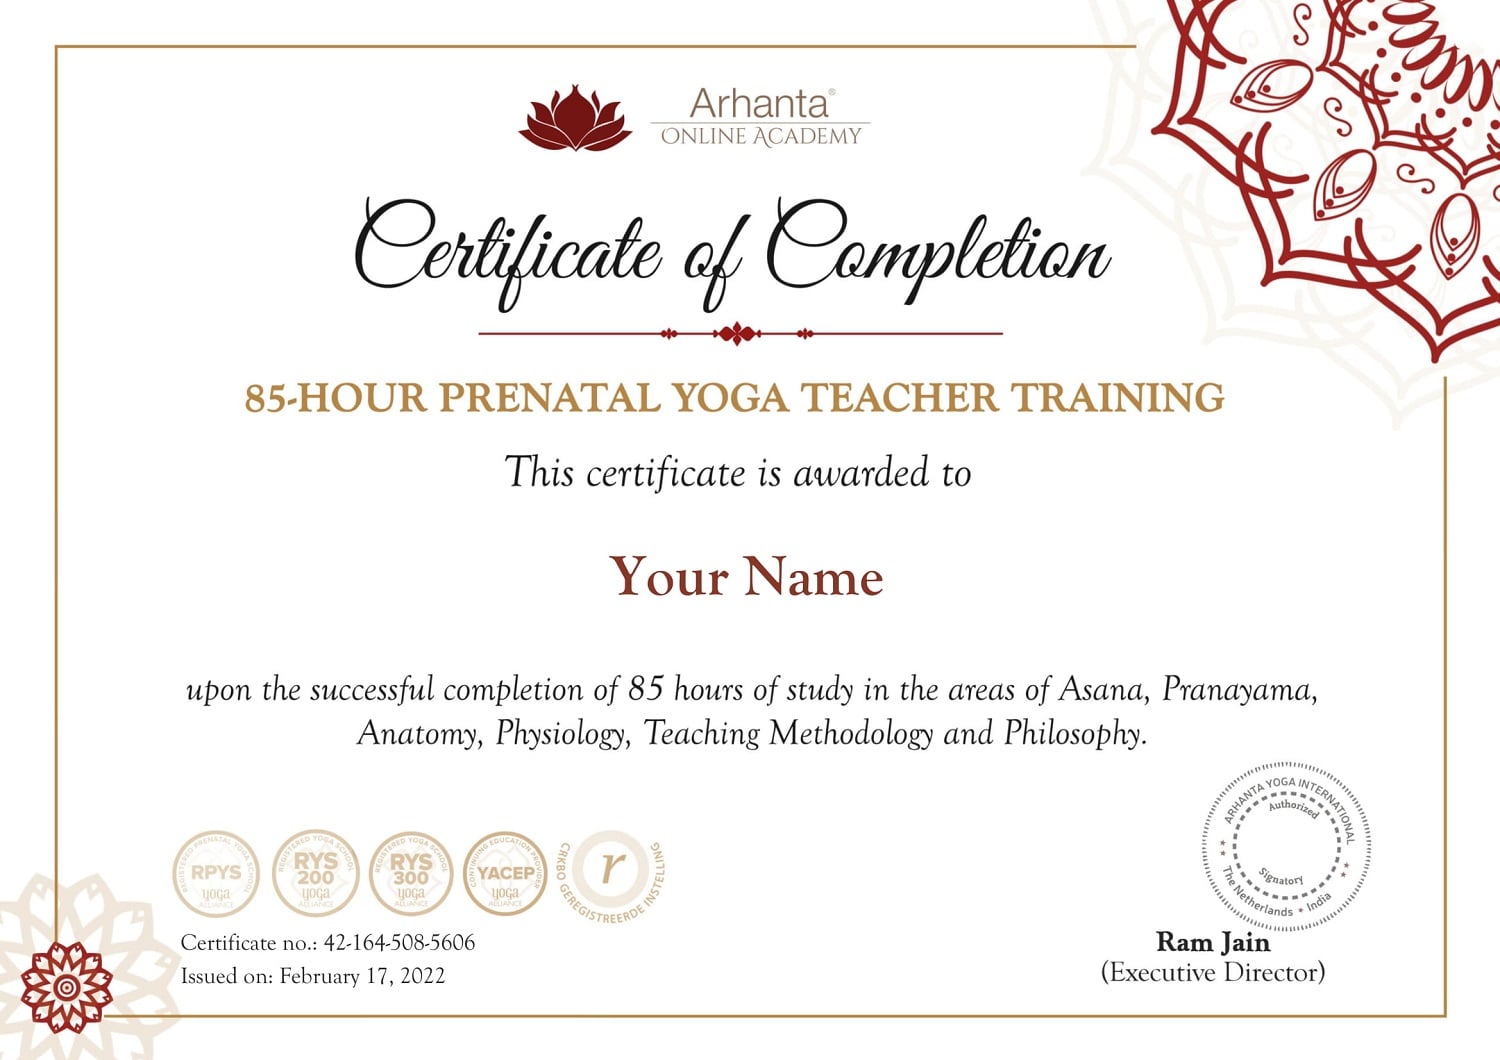 Certificado de formación de profesores de yoga prenatal de 85 horas